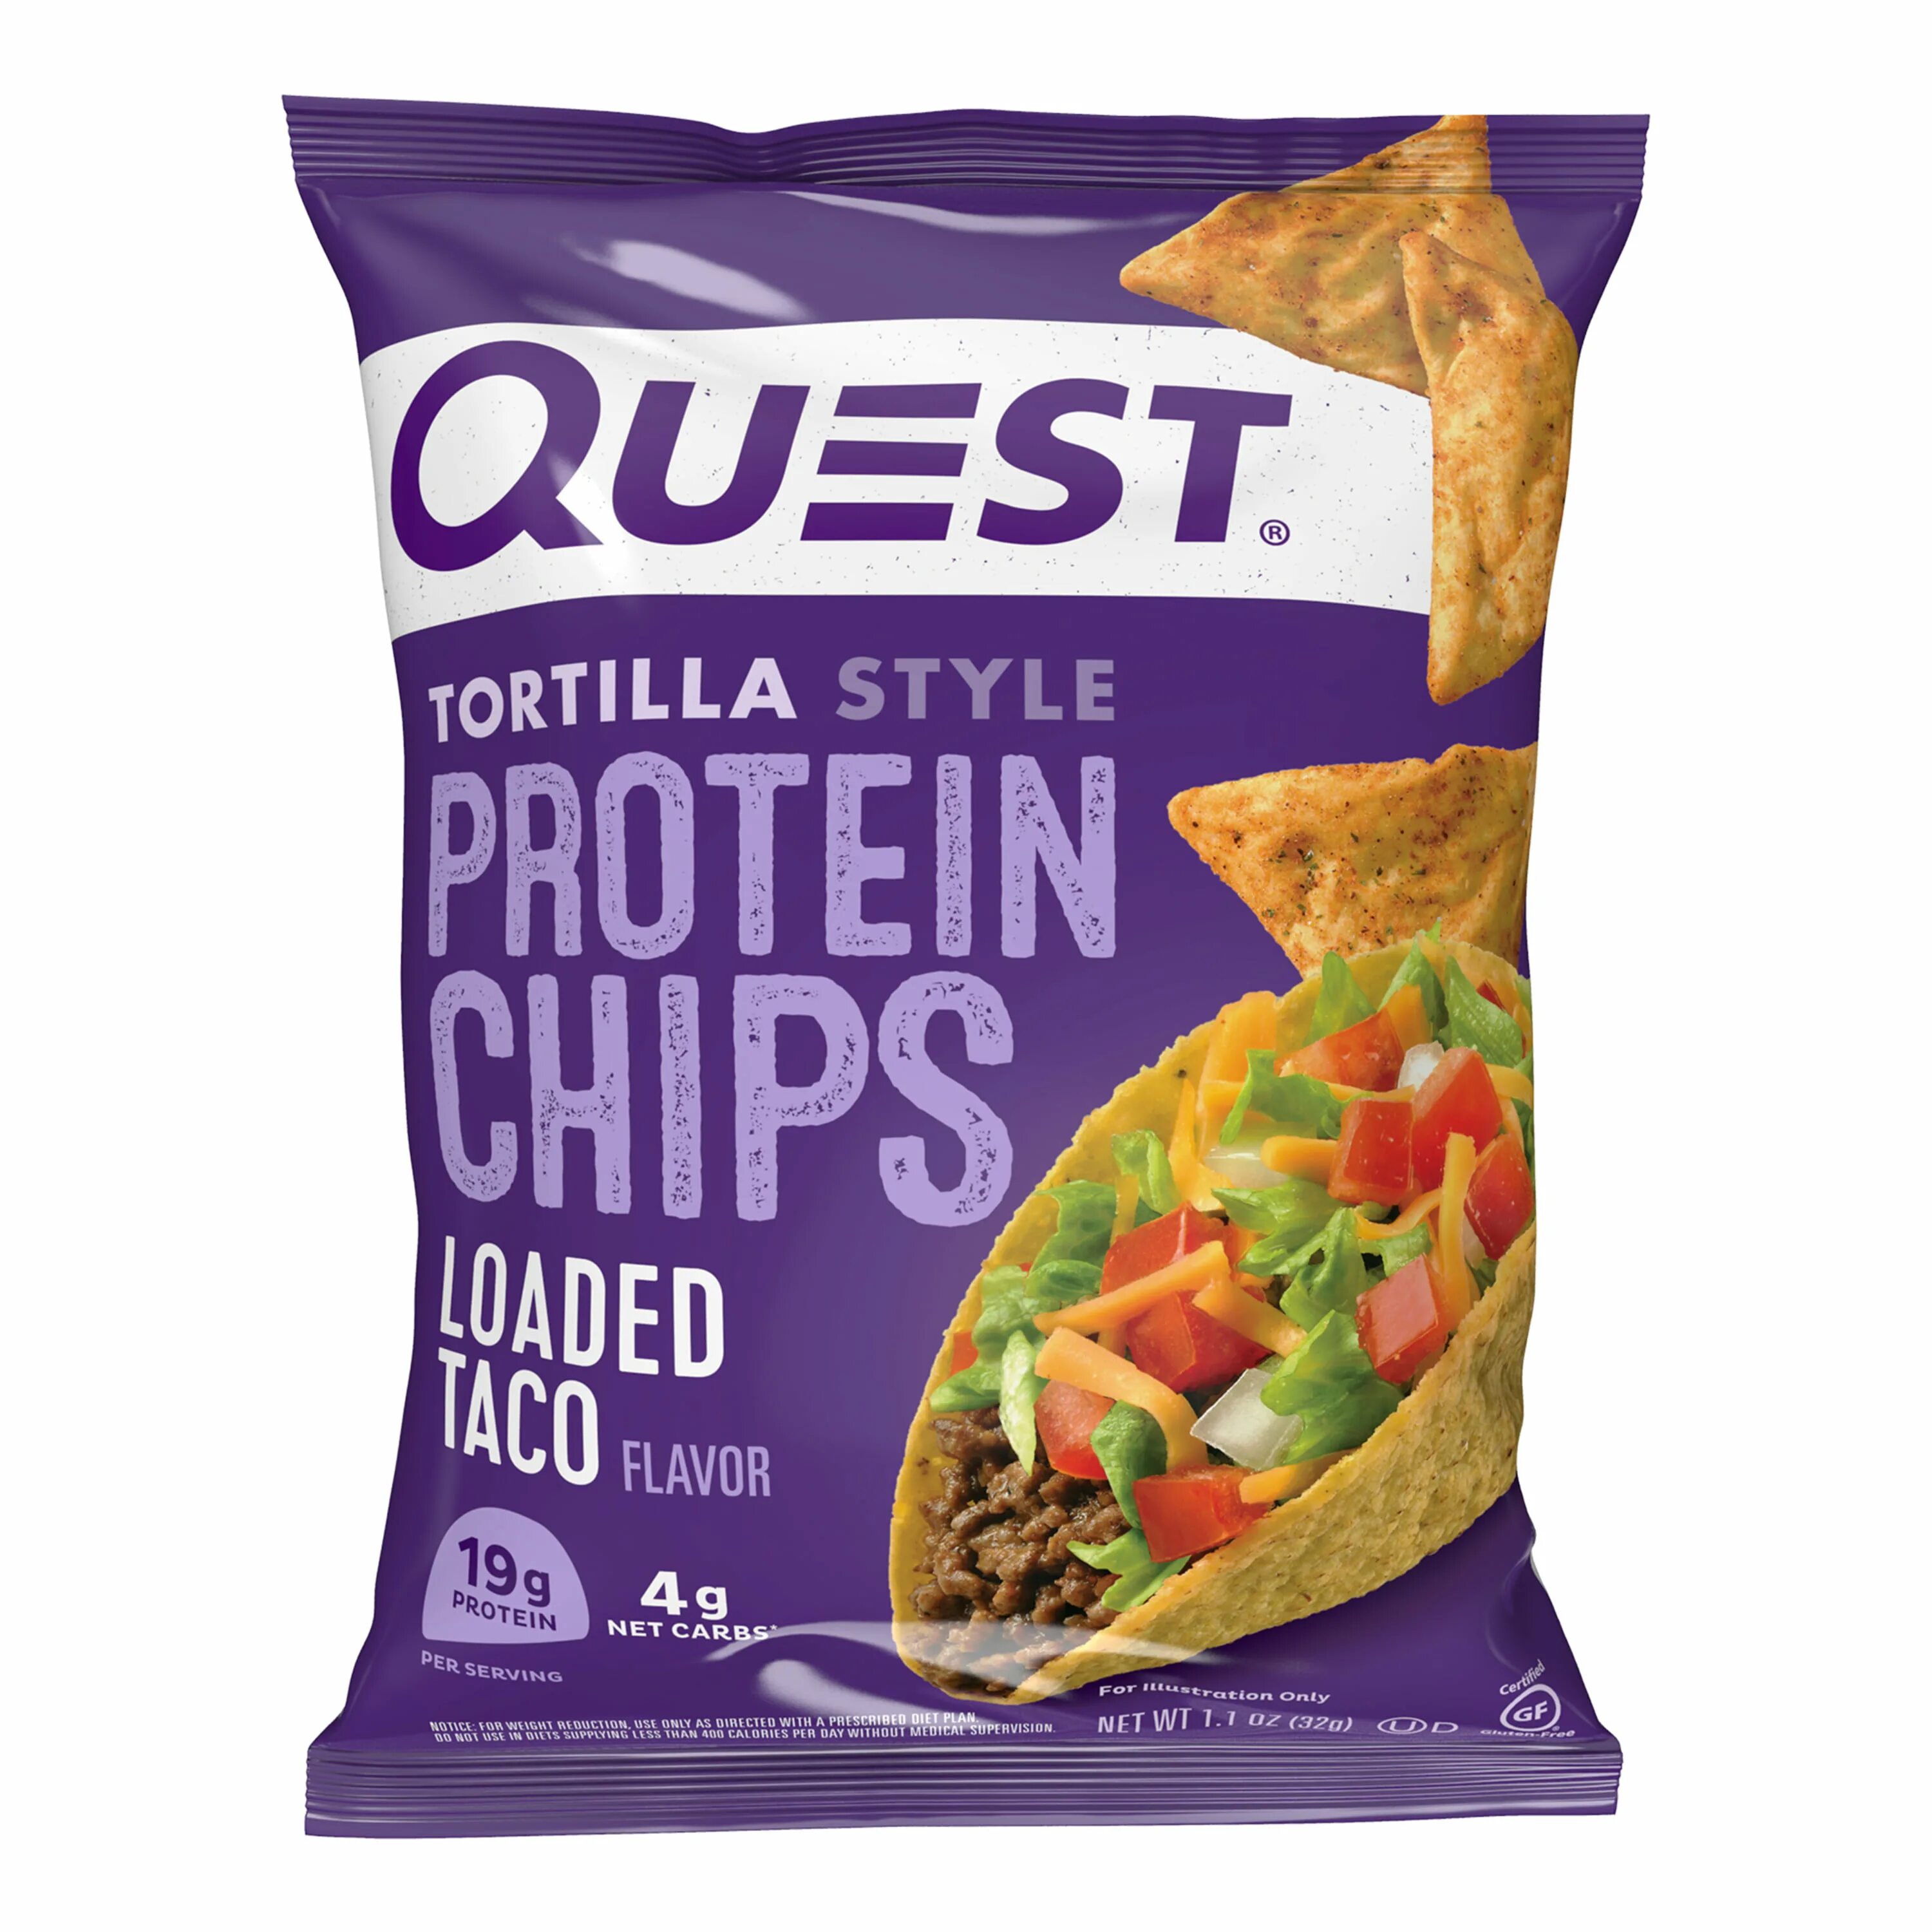 Quest Protein Chips. Протеиновые чипсы Quest. Quest Nutrition чипсы Protein Chips. Чипсы с протеином.